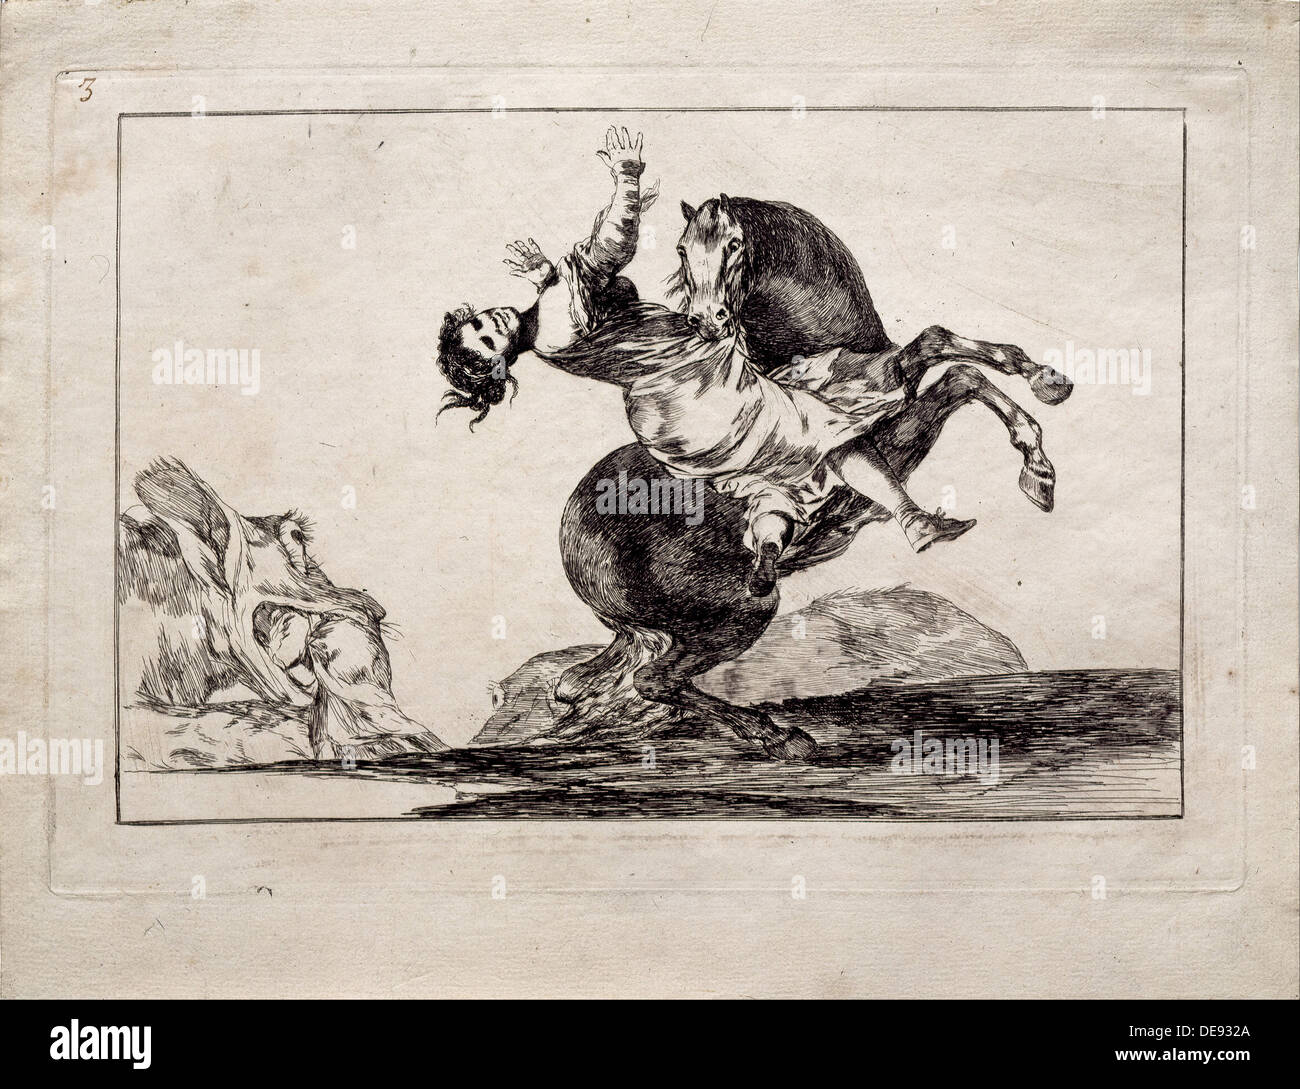 Le Horse-Abductor (de la série Los disparates (Follies), 1815-1819. Artiste : Goya, Francisco de (1746-1828) Banque D'Images